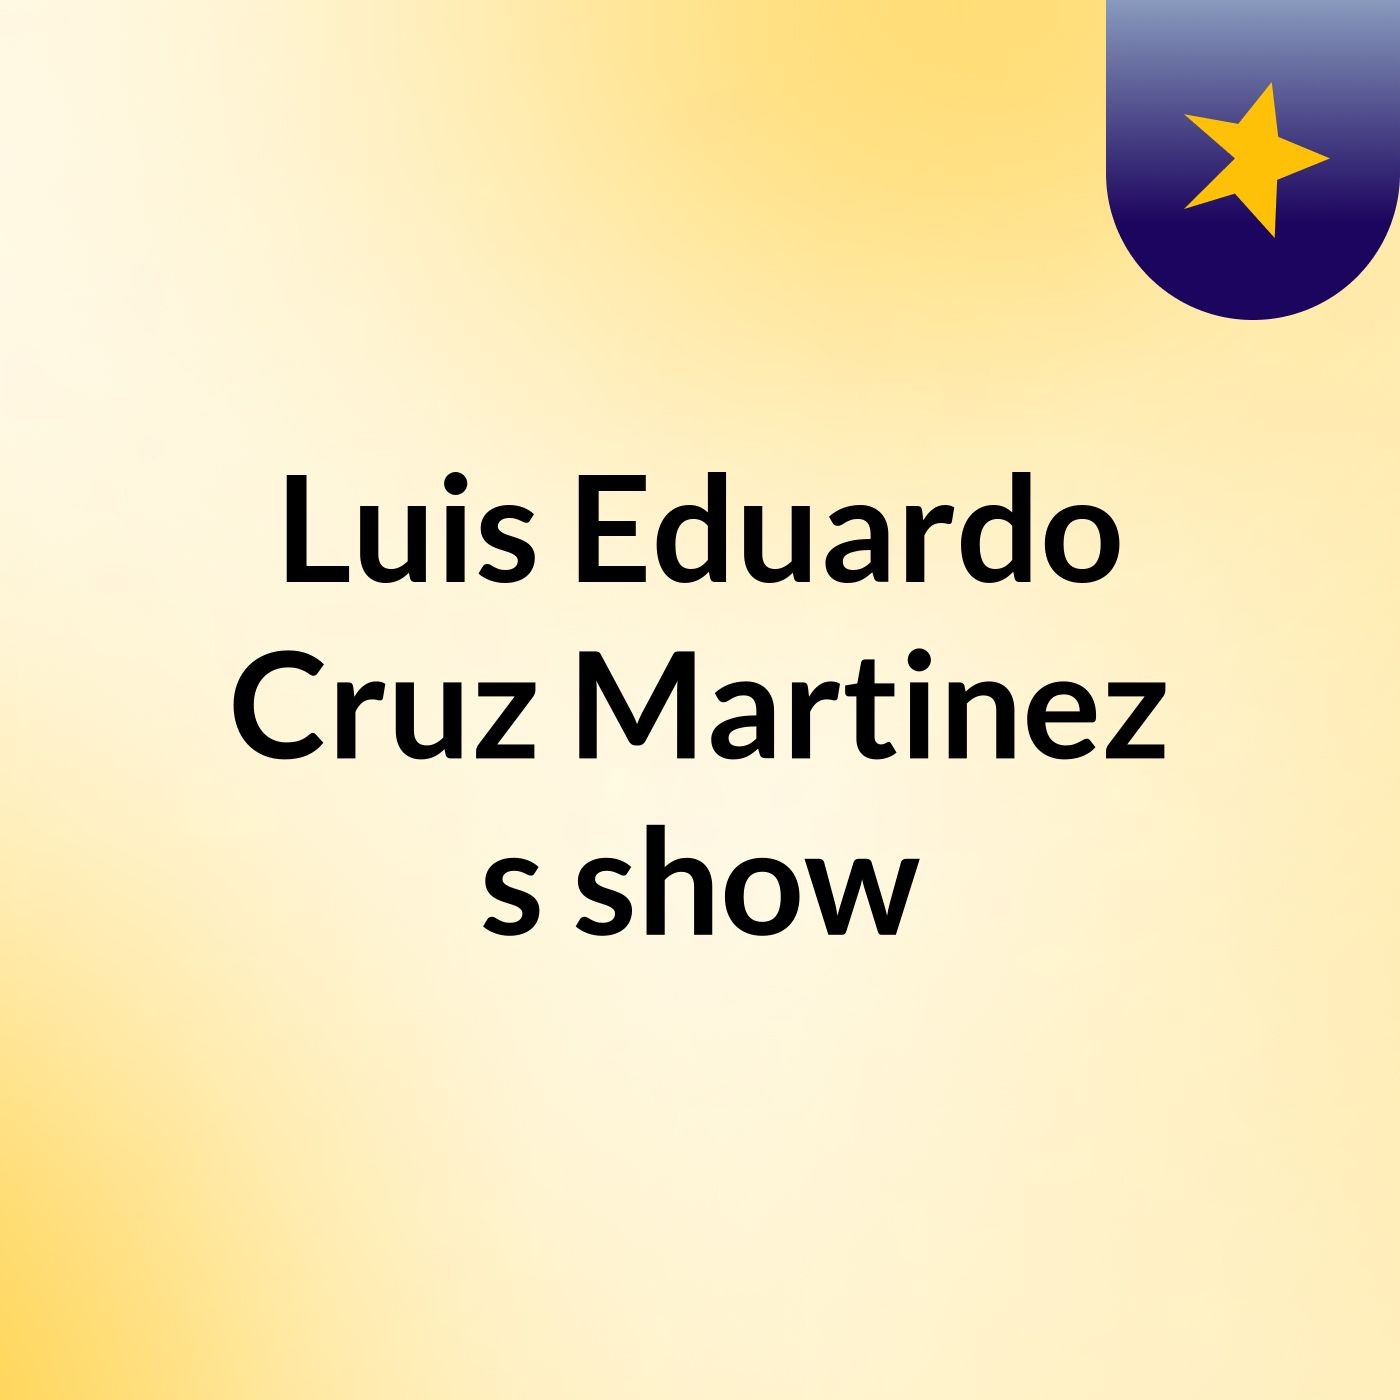 Luis Eduardo Cruz Martinez's show